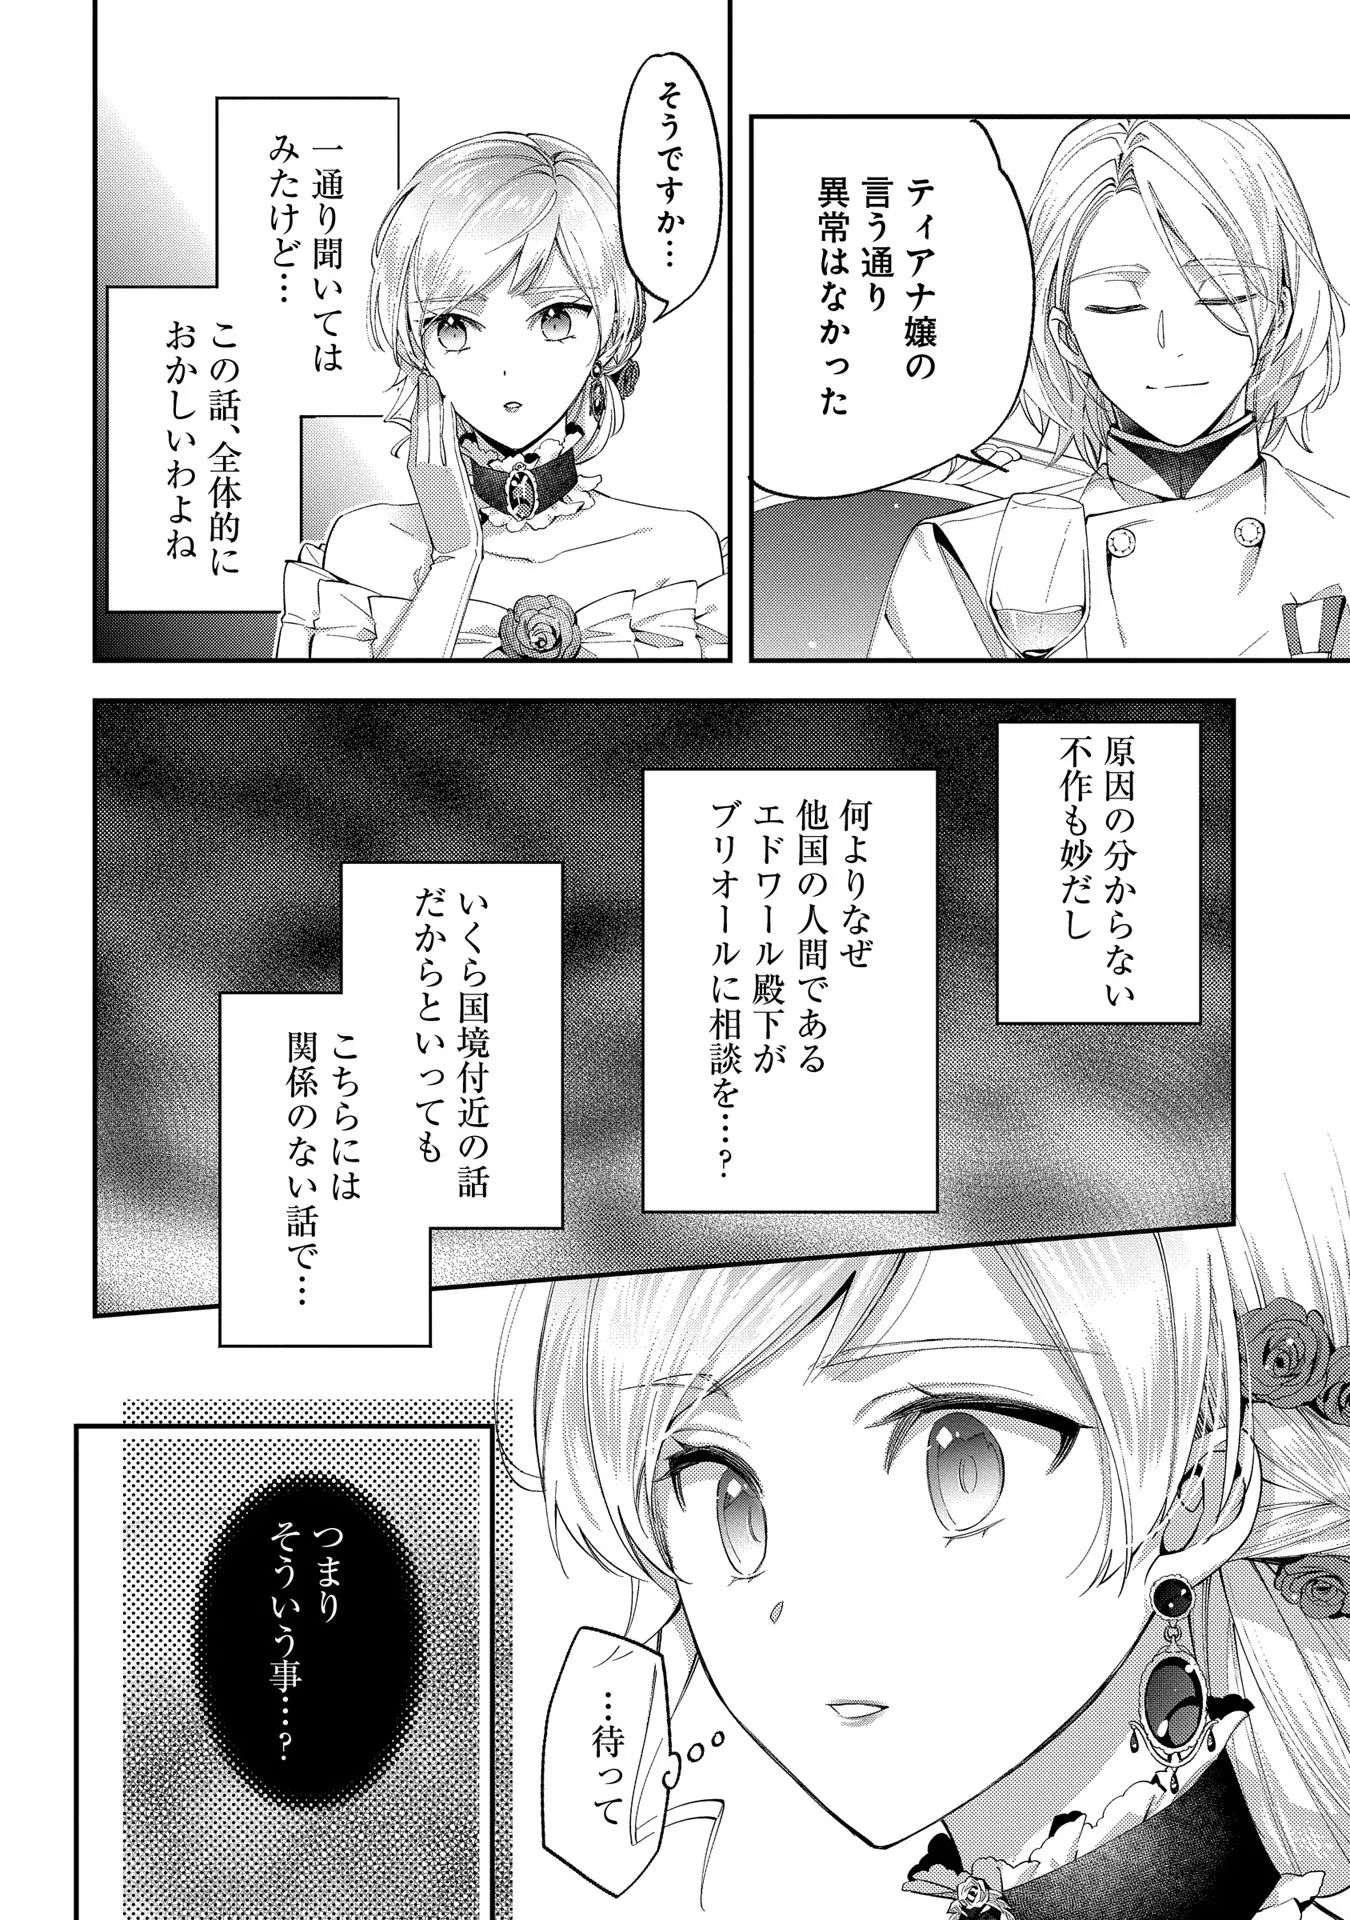 Outaishi ni Konyaku Hakisareta no de, Mou Baka no Furi wa Yameyou to Omoimasu - Chapter 11 - Page 26